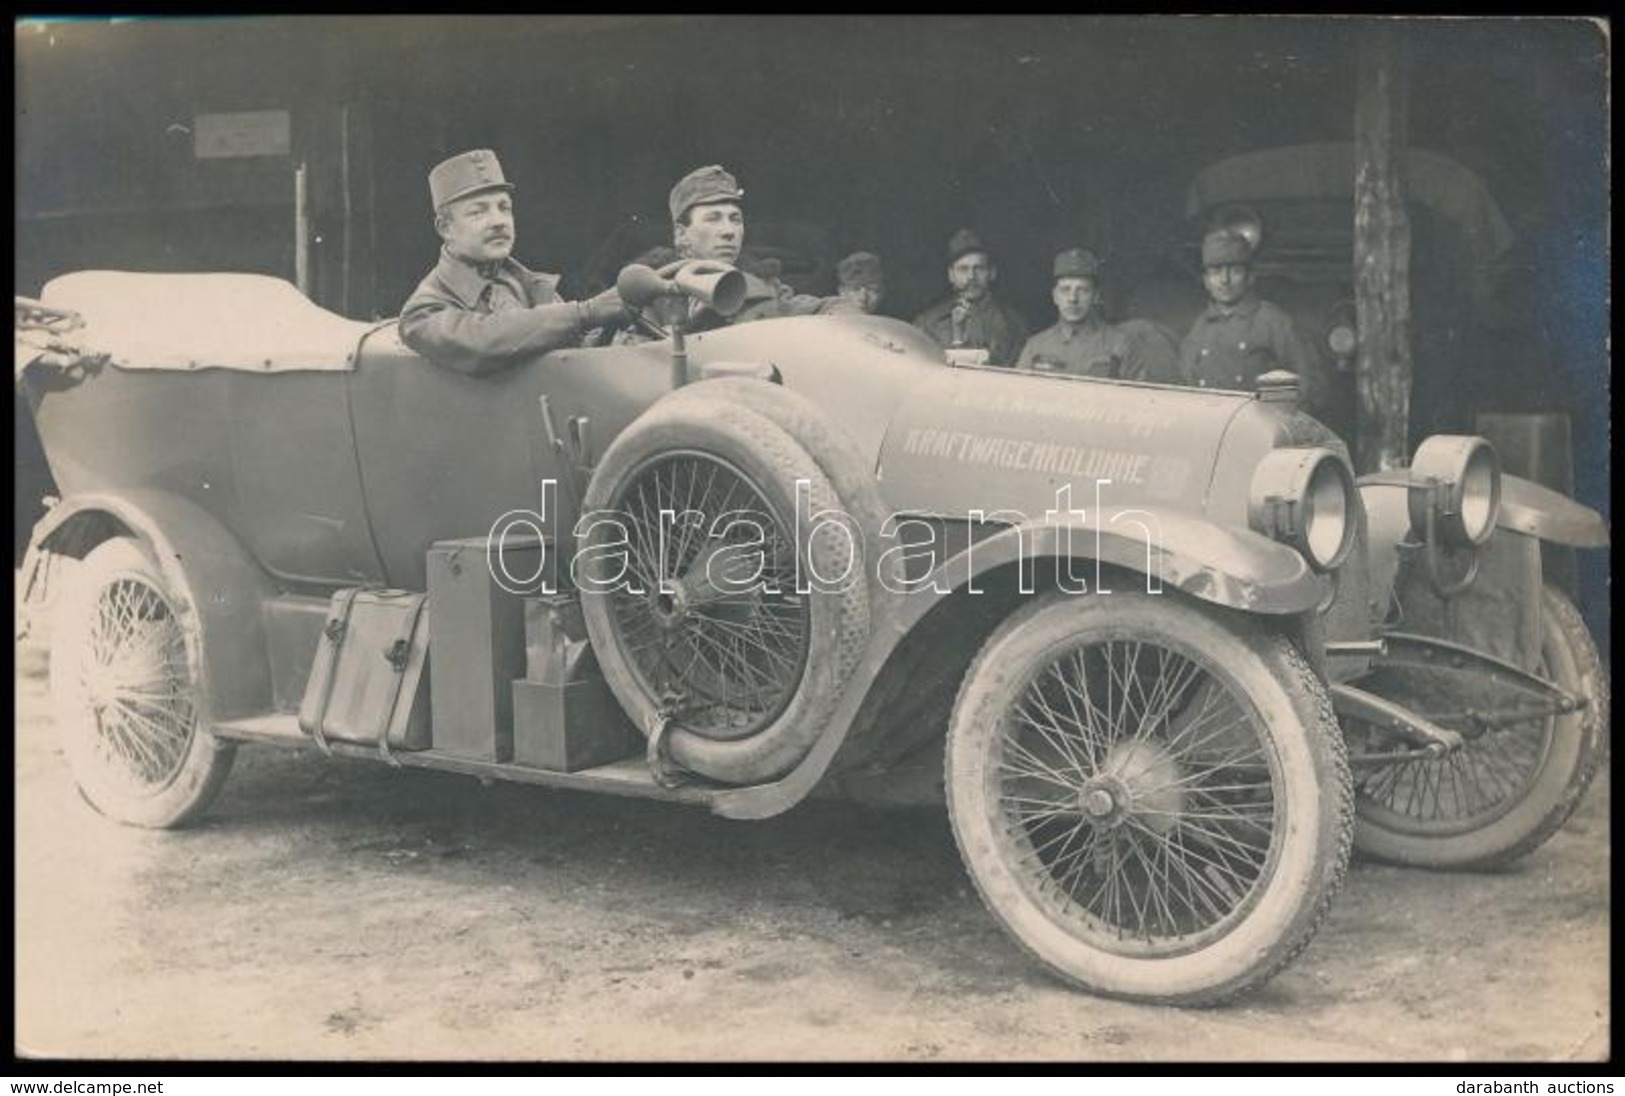 1916 Fresz György Sofőr Gépkocsis Század Feliratozott Kocsijában / WW, I, Driver Of An Automobile Unit K.u.K. Leichte Kr - Ohne Zuordnung